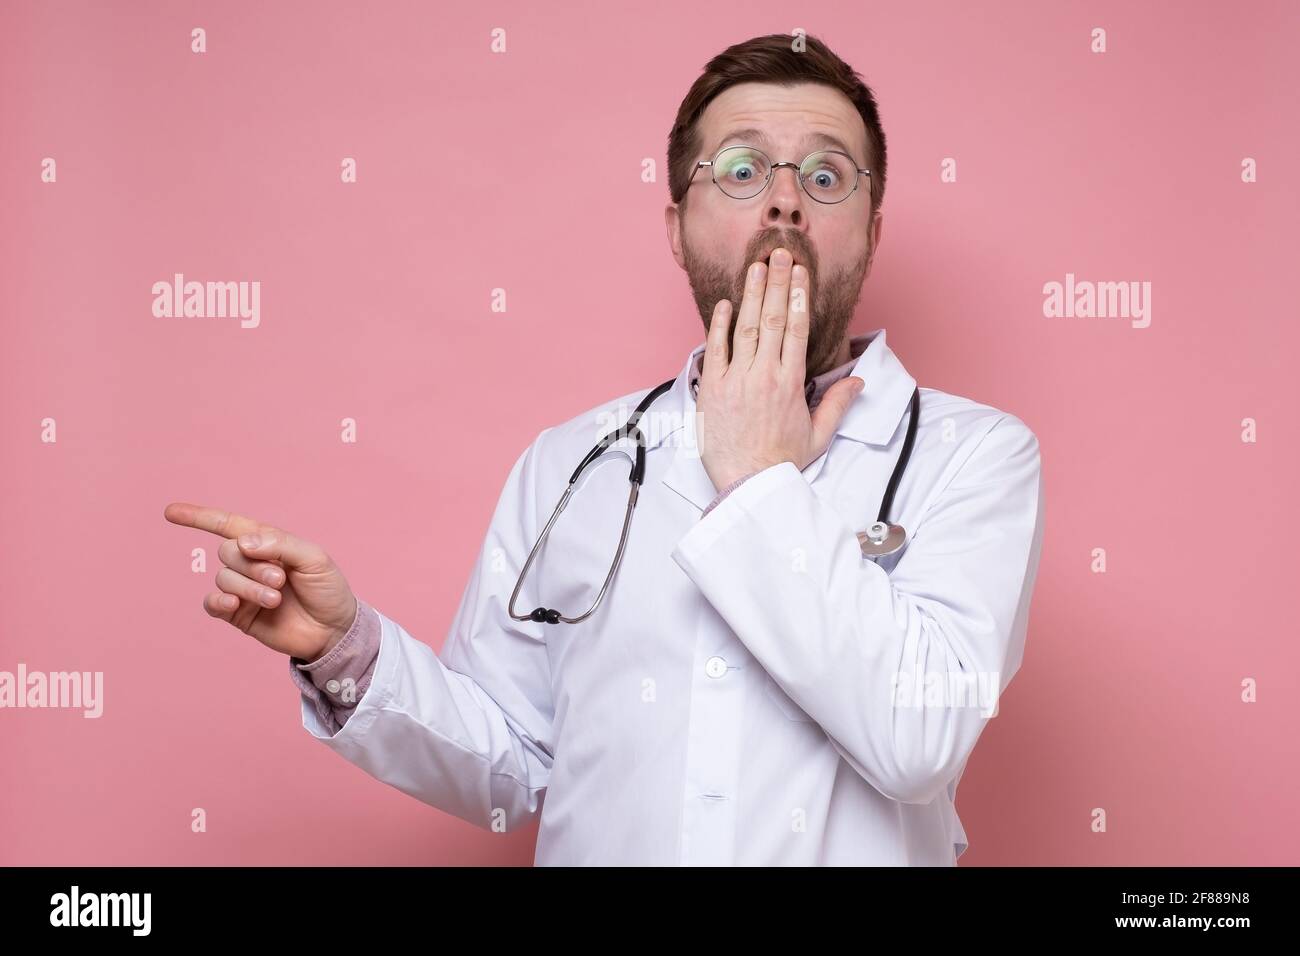 Geschockter Arzt mit einem Stethoskop um den Hals, erschrocken, zeigt den Finger zur Seite, blickt auf die Kamera und bedeckt den Mund mit der Hand. Stockfoto